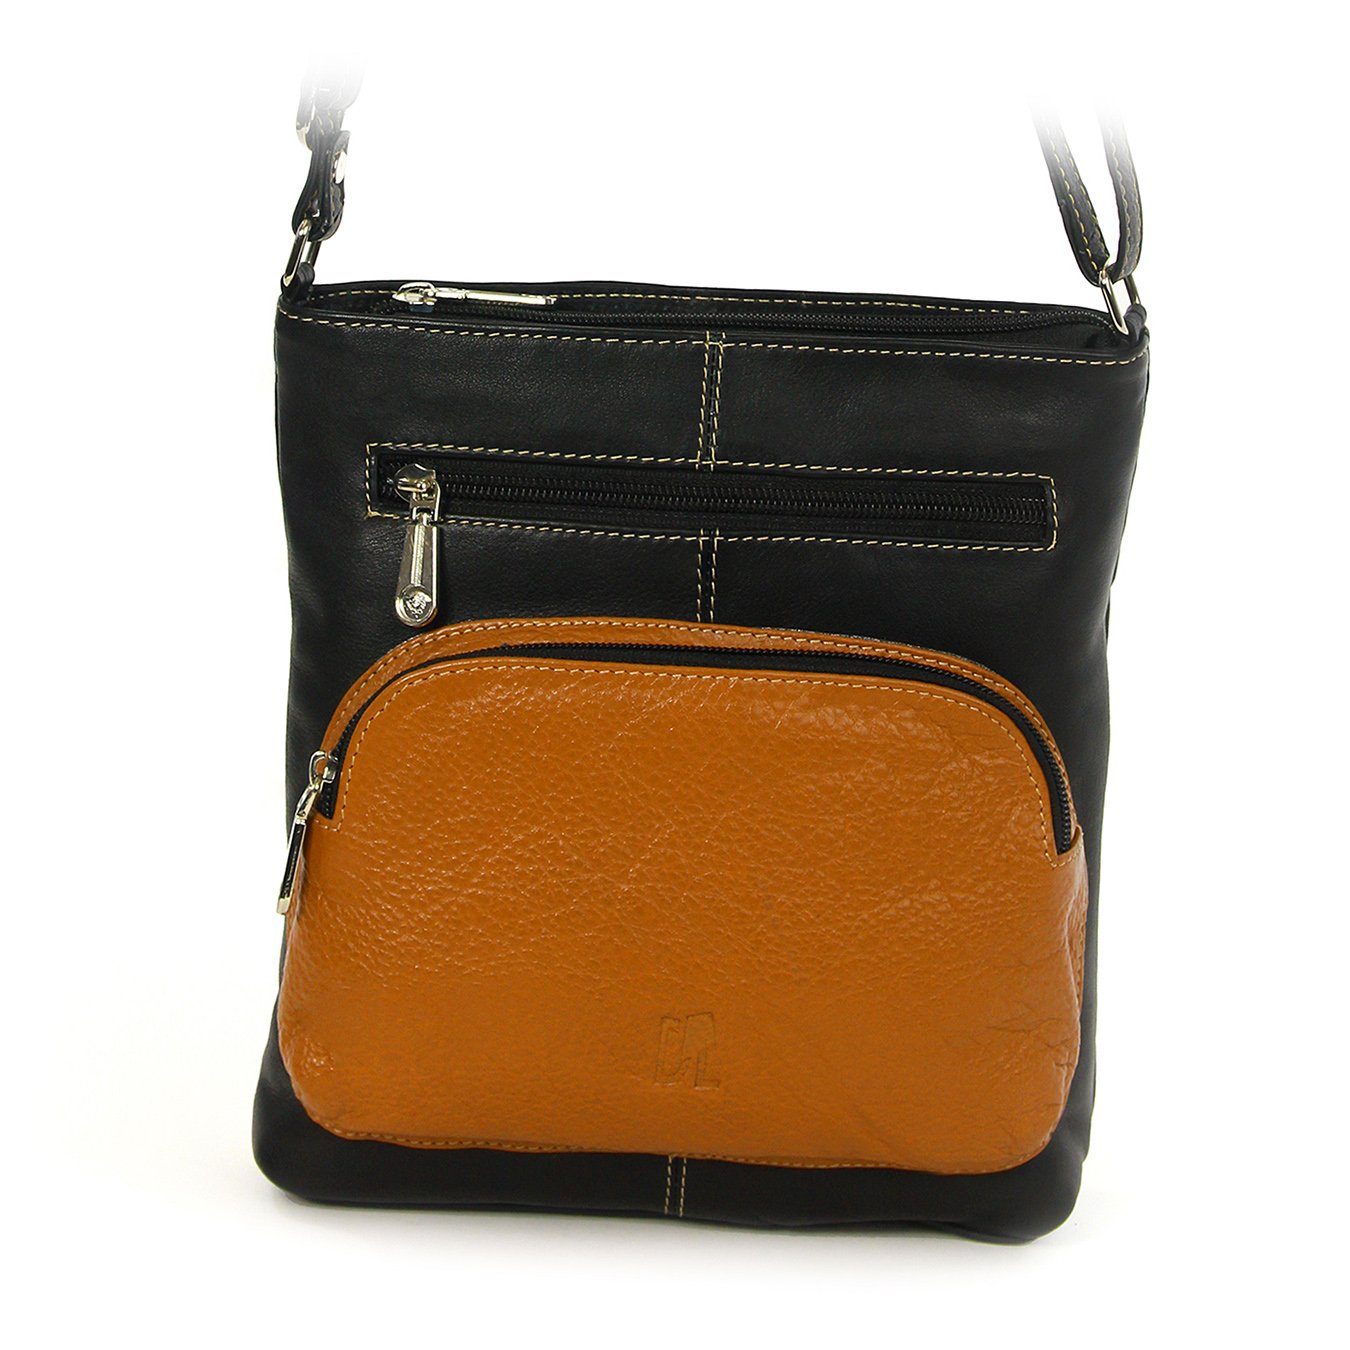 DrachenLeder Handtasche OTZ900X schwarz-braun DrachenLeder Echtleder Handtasche braun schwarz, (Handtasche), Tasche, Damen Damen